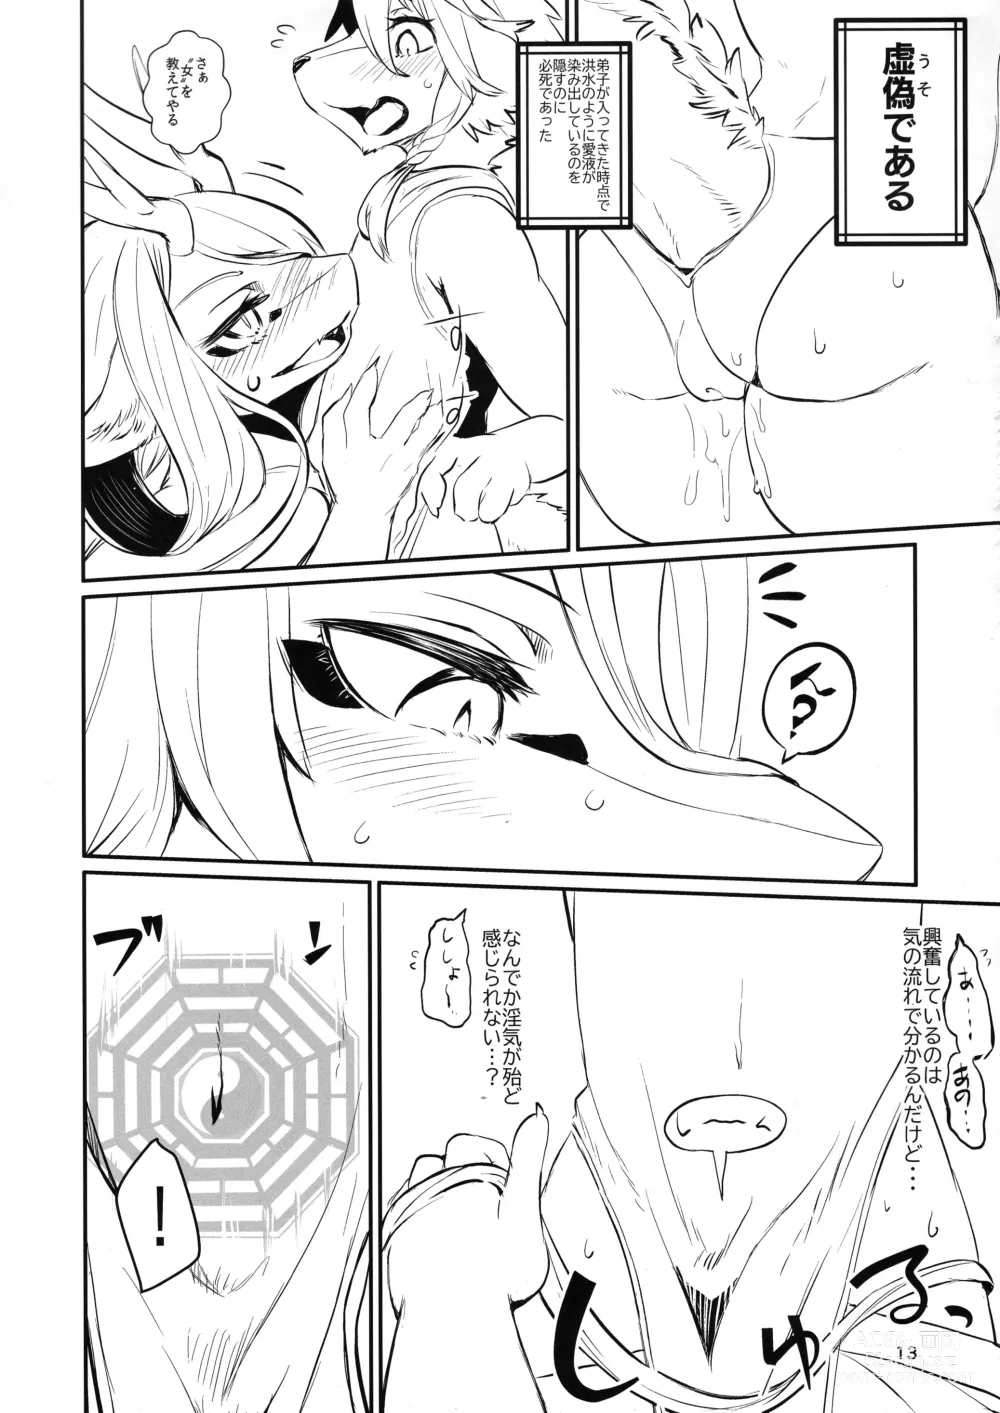 Page 13 of doujinshi Kyosei Yukoku ni Kaoru